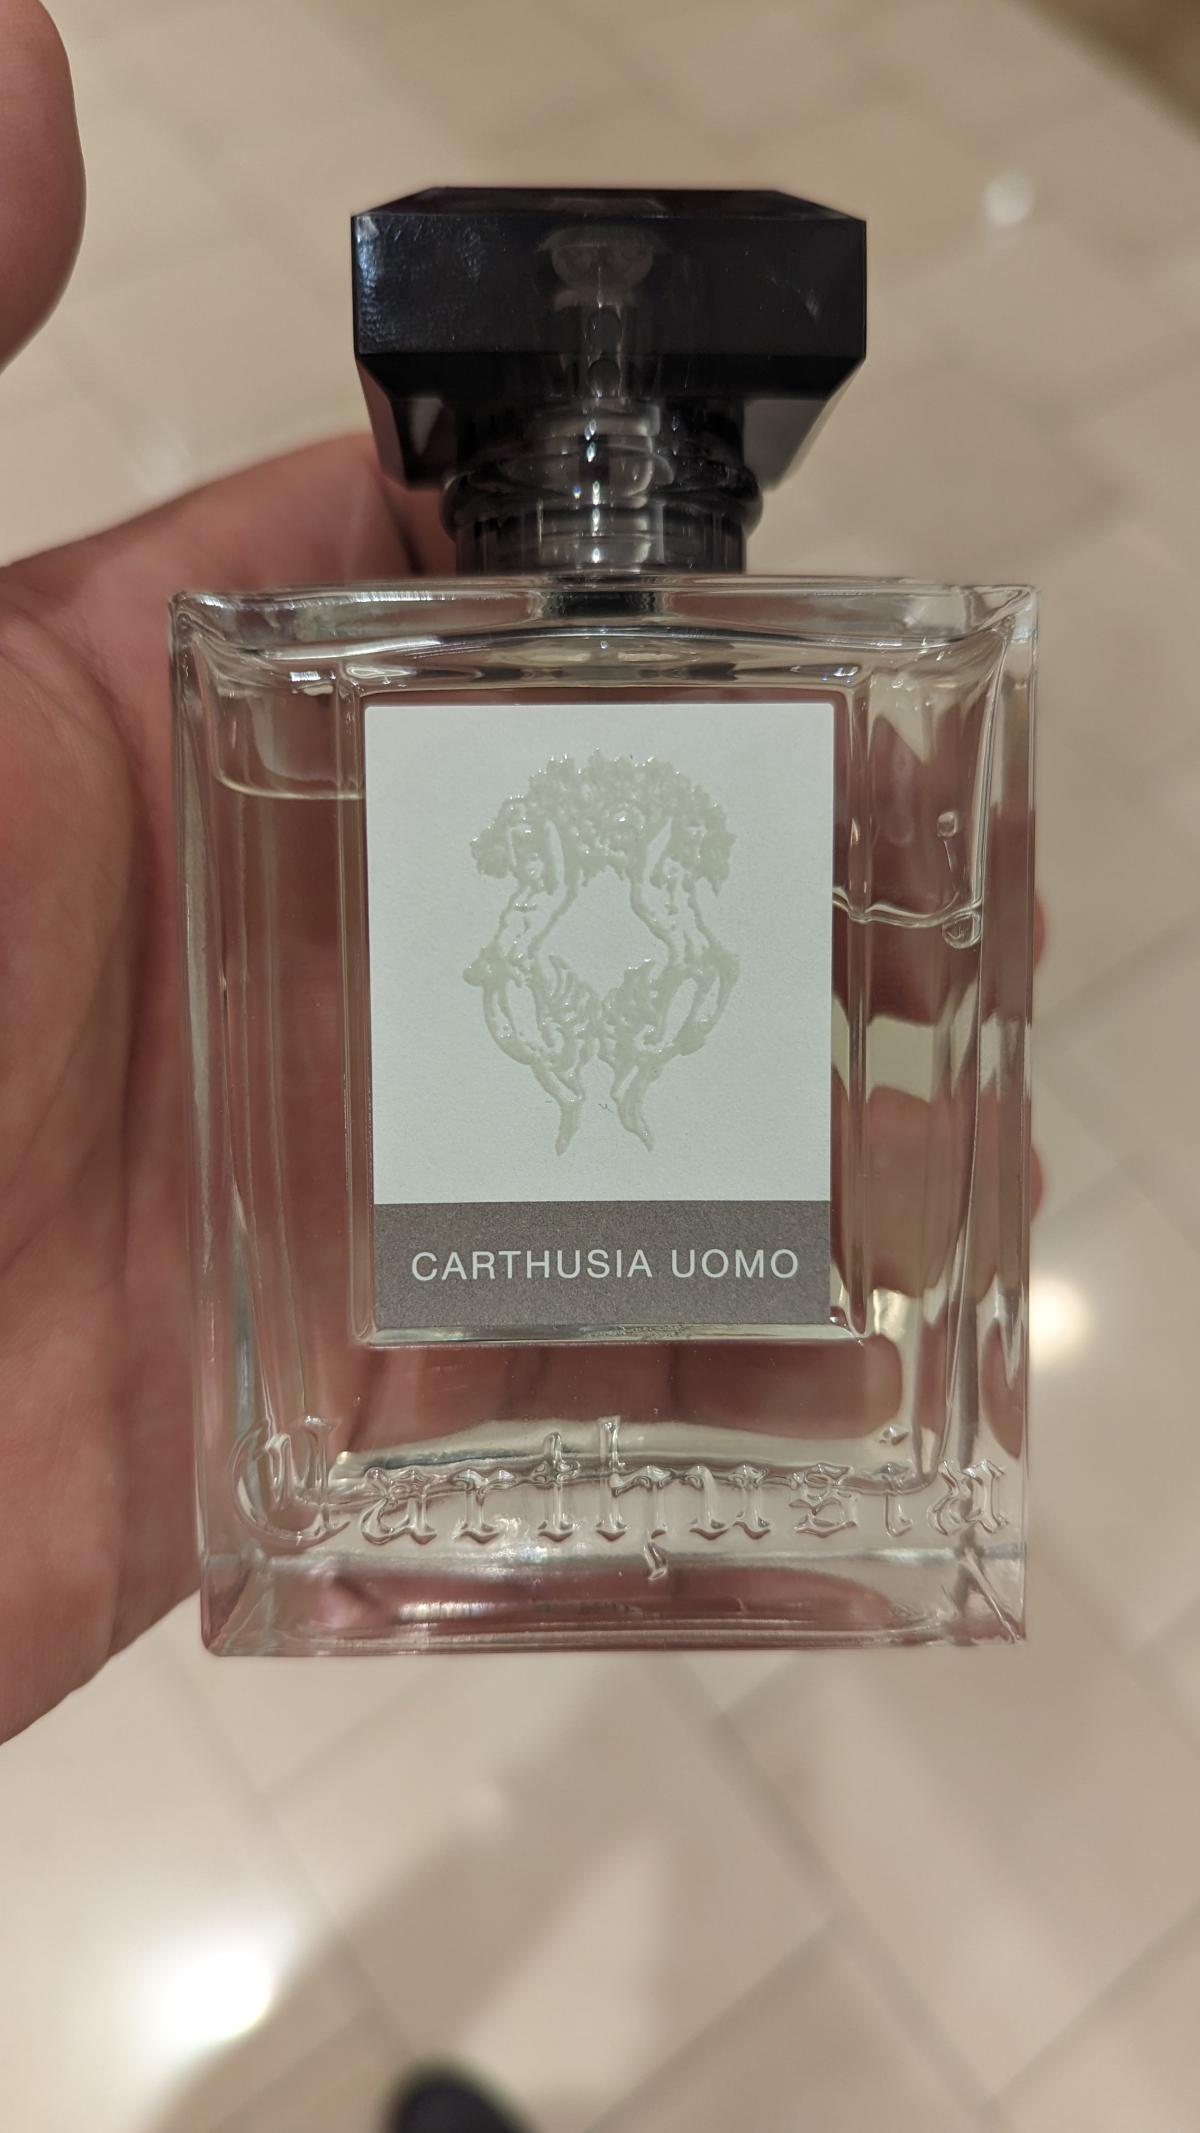 Carthusia Uomo Carthusia cologne - a fragrance for men 2004